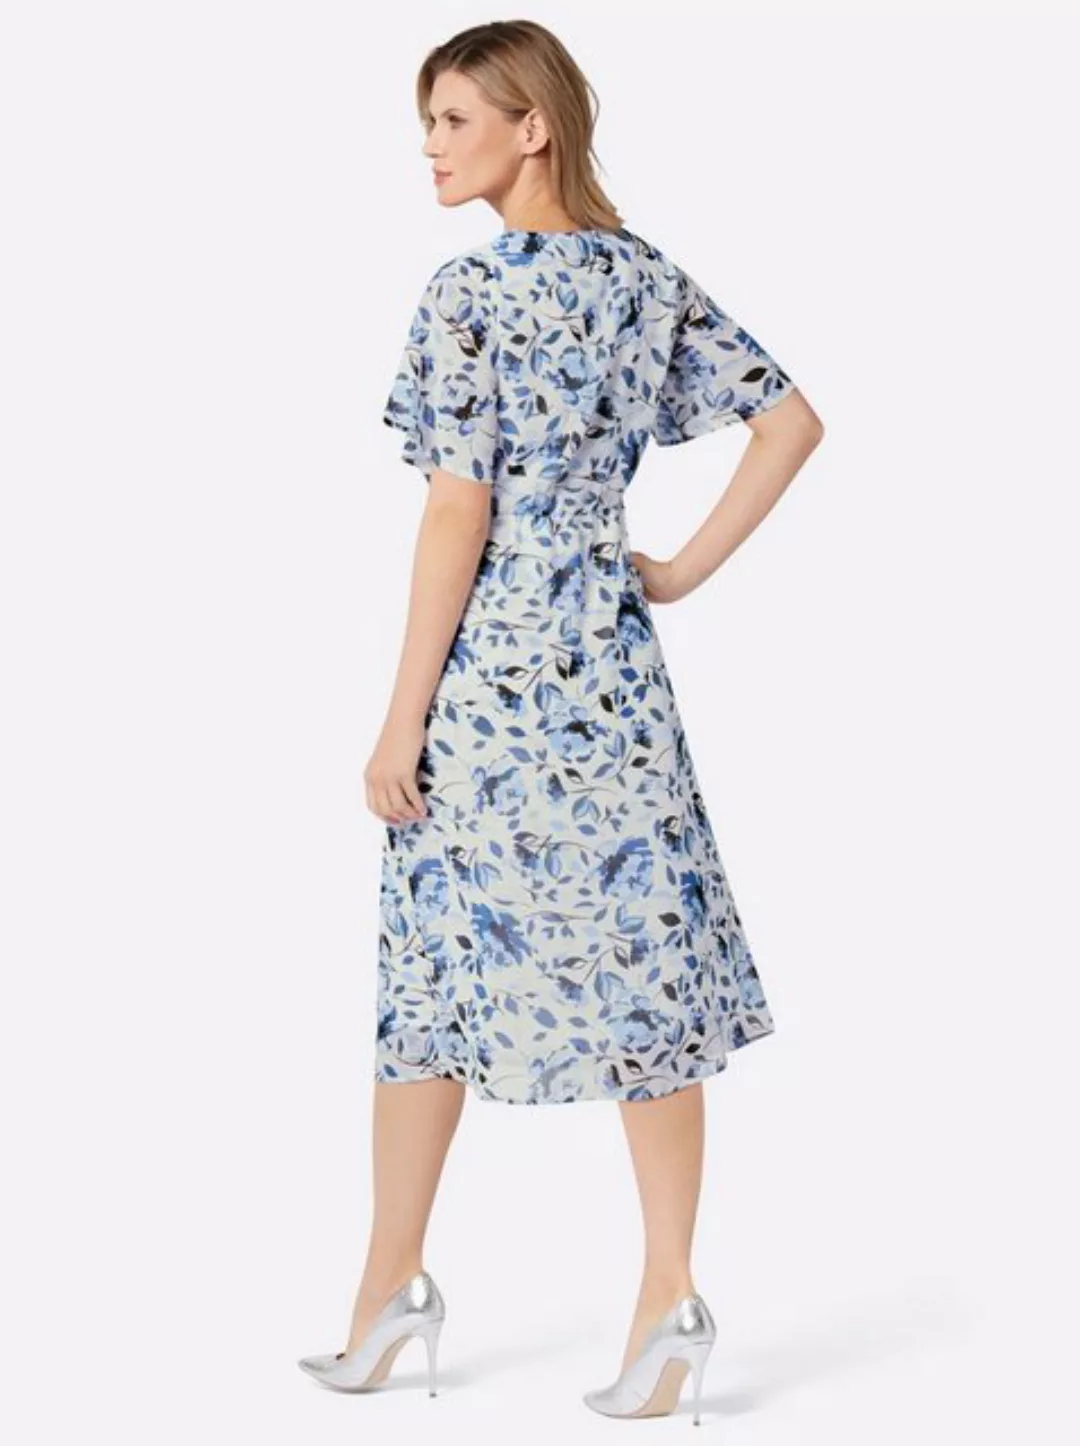 Sieh an! Etuikleid Druck-Kleid günstig online kaufen